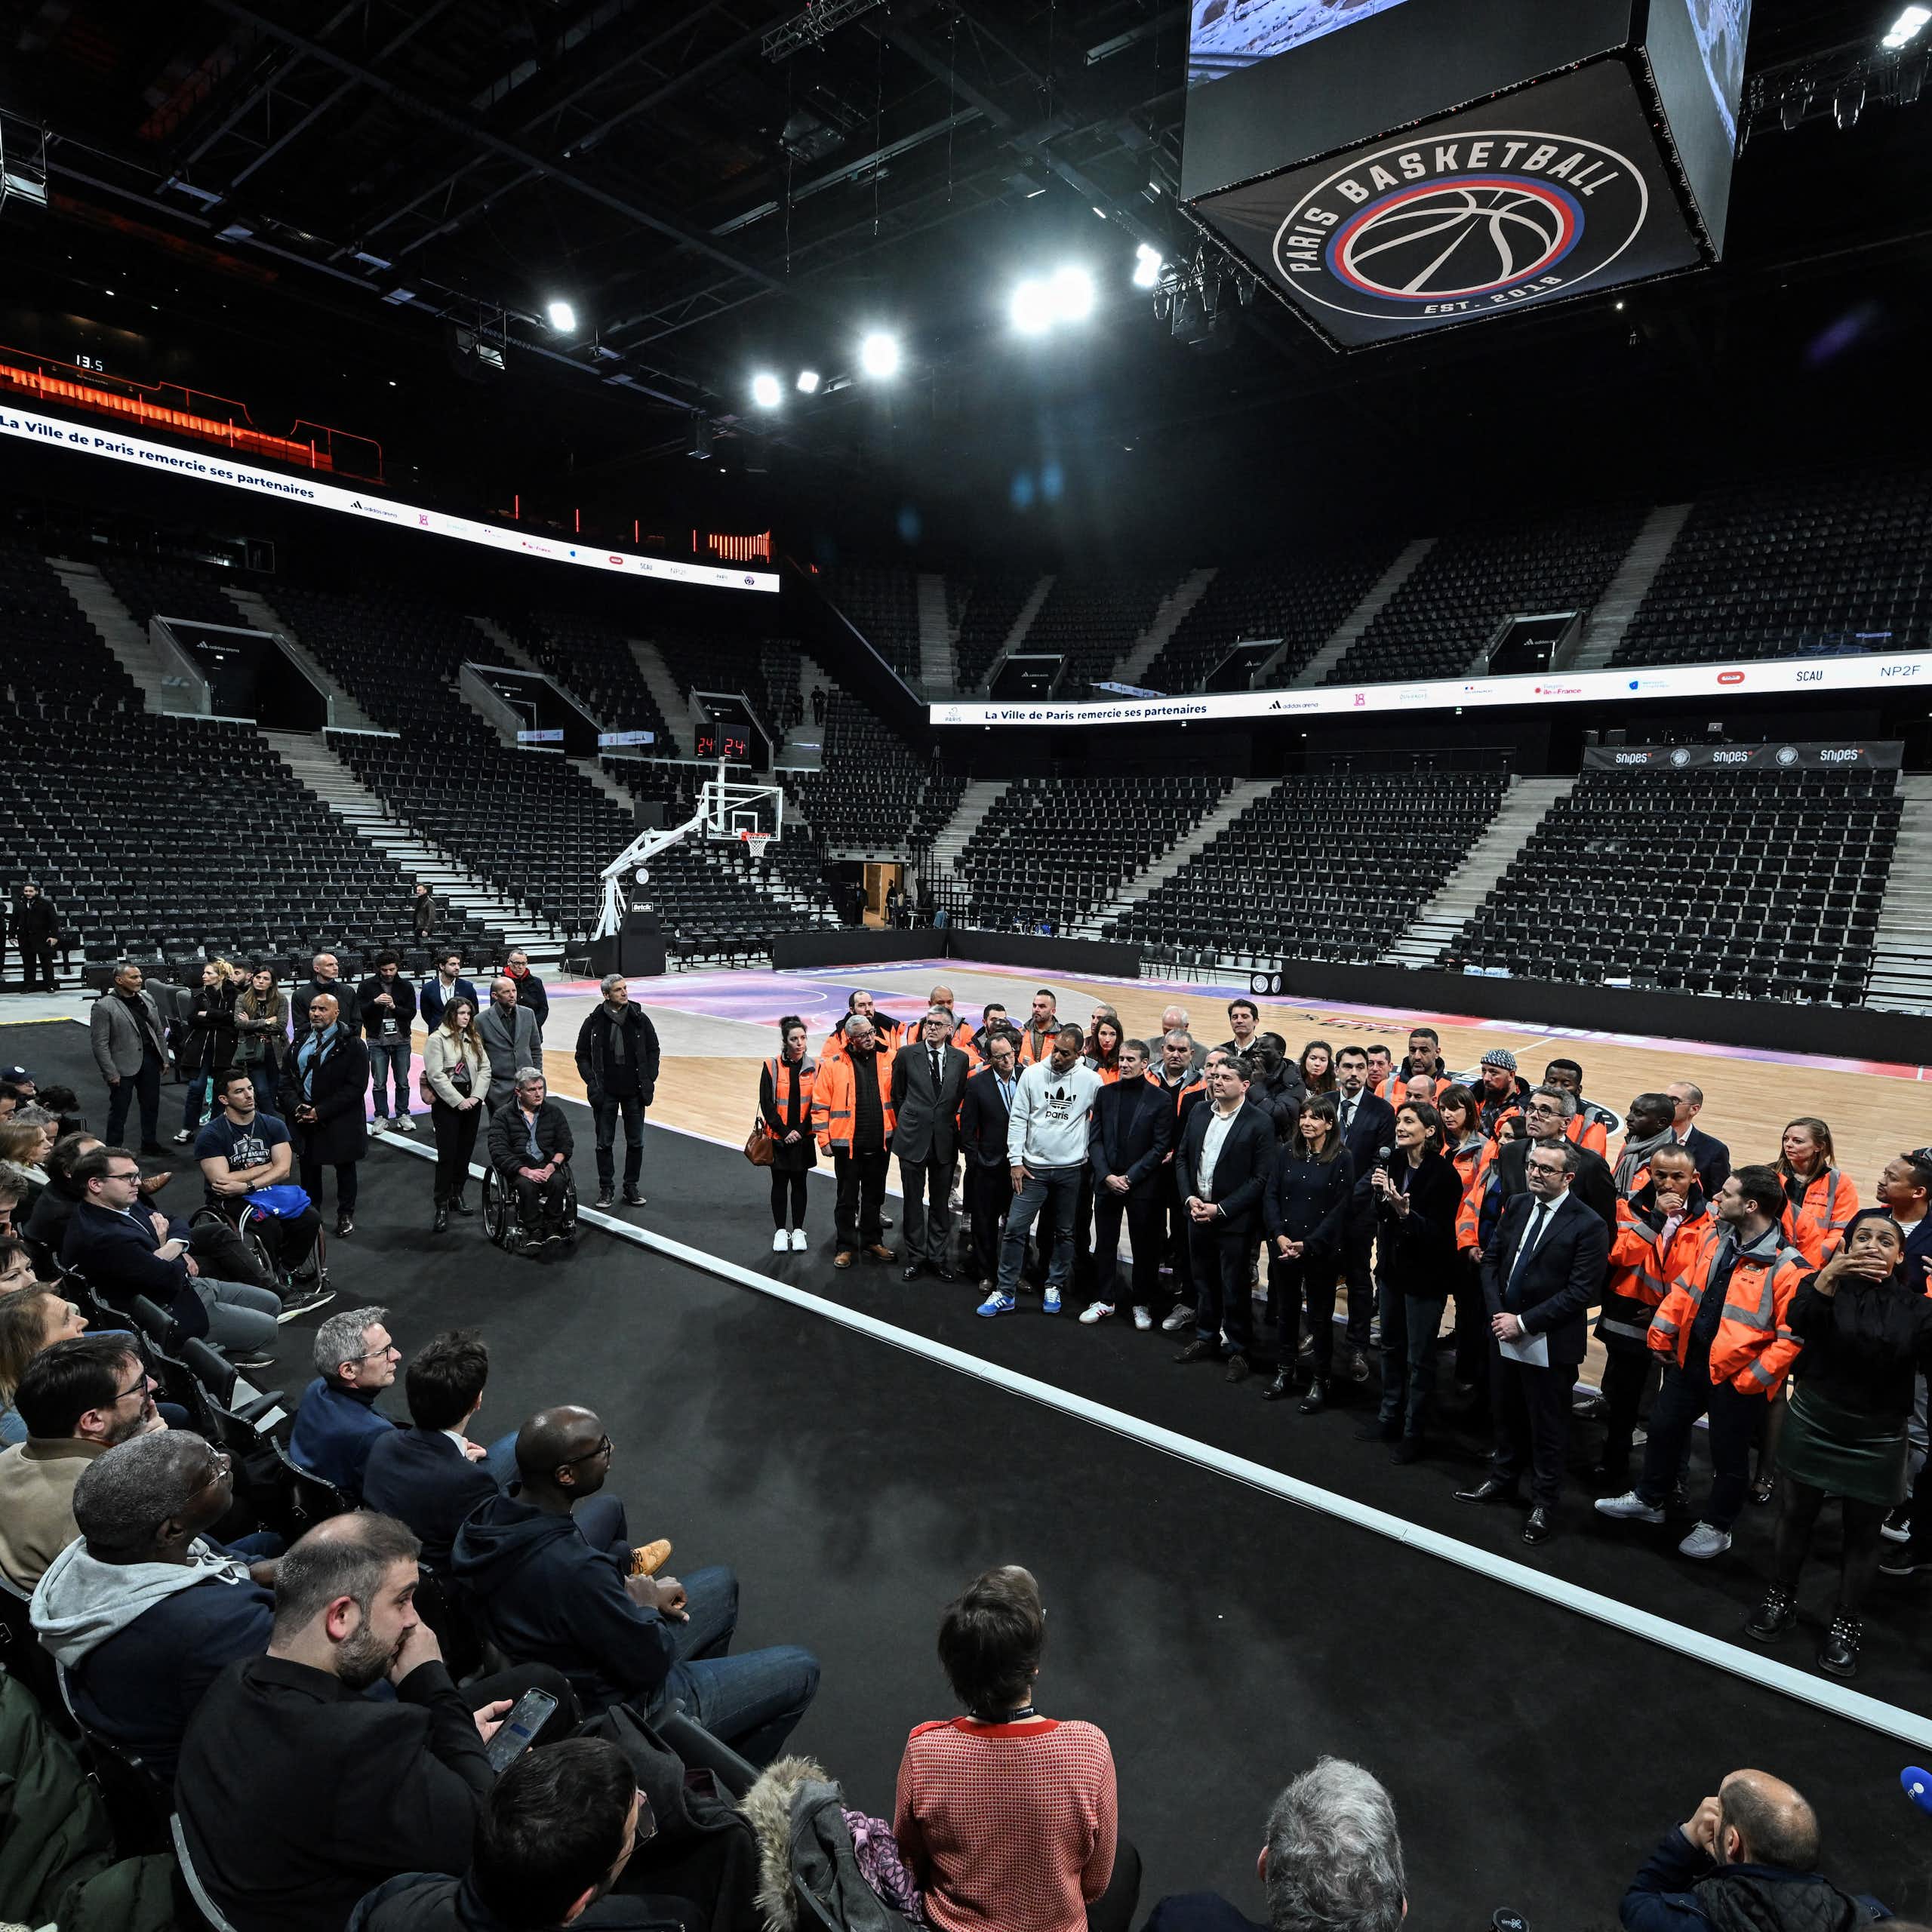 Inauguration de la nouvelle Arena Porte de la Chapelle à Paris